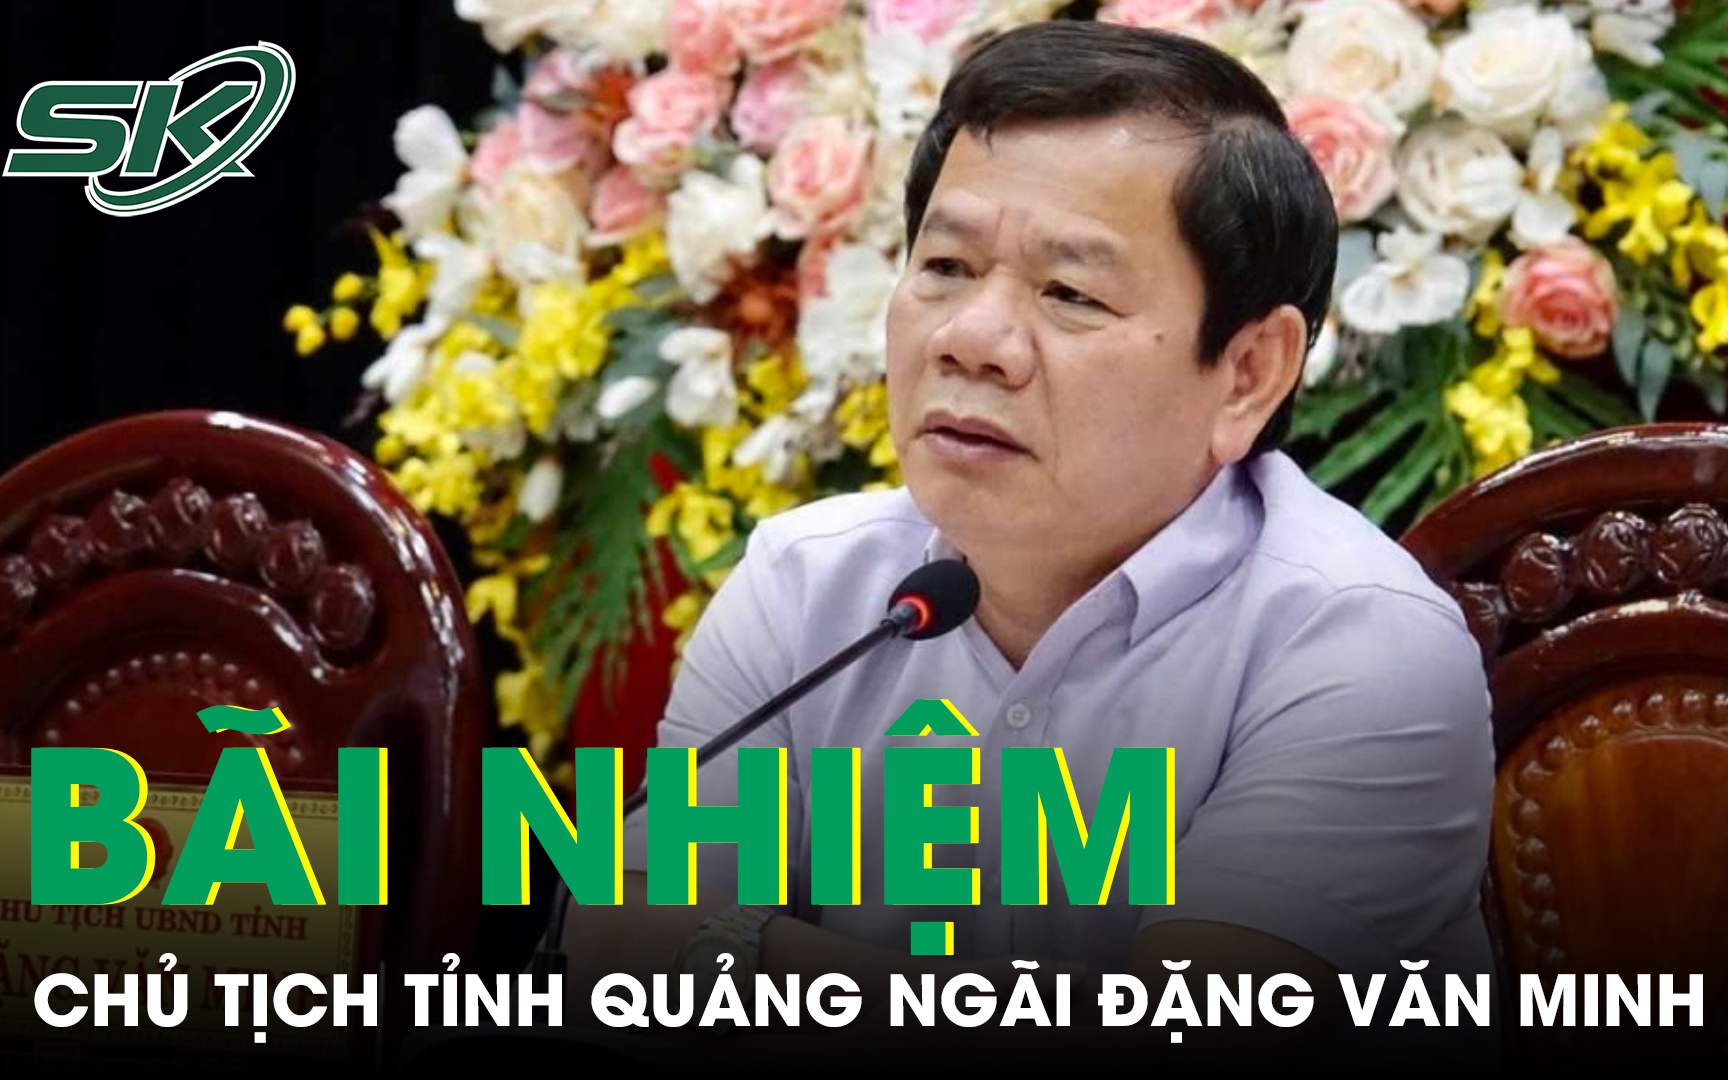 Chủ tịch UBND tỉnh Quảng Ngãi Đặng Văn Minh bị bãi nhiệm